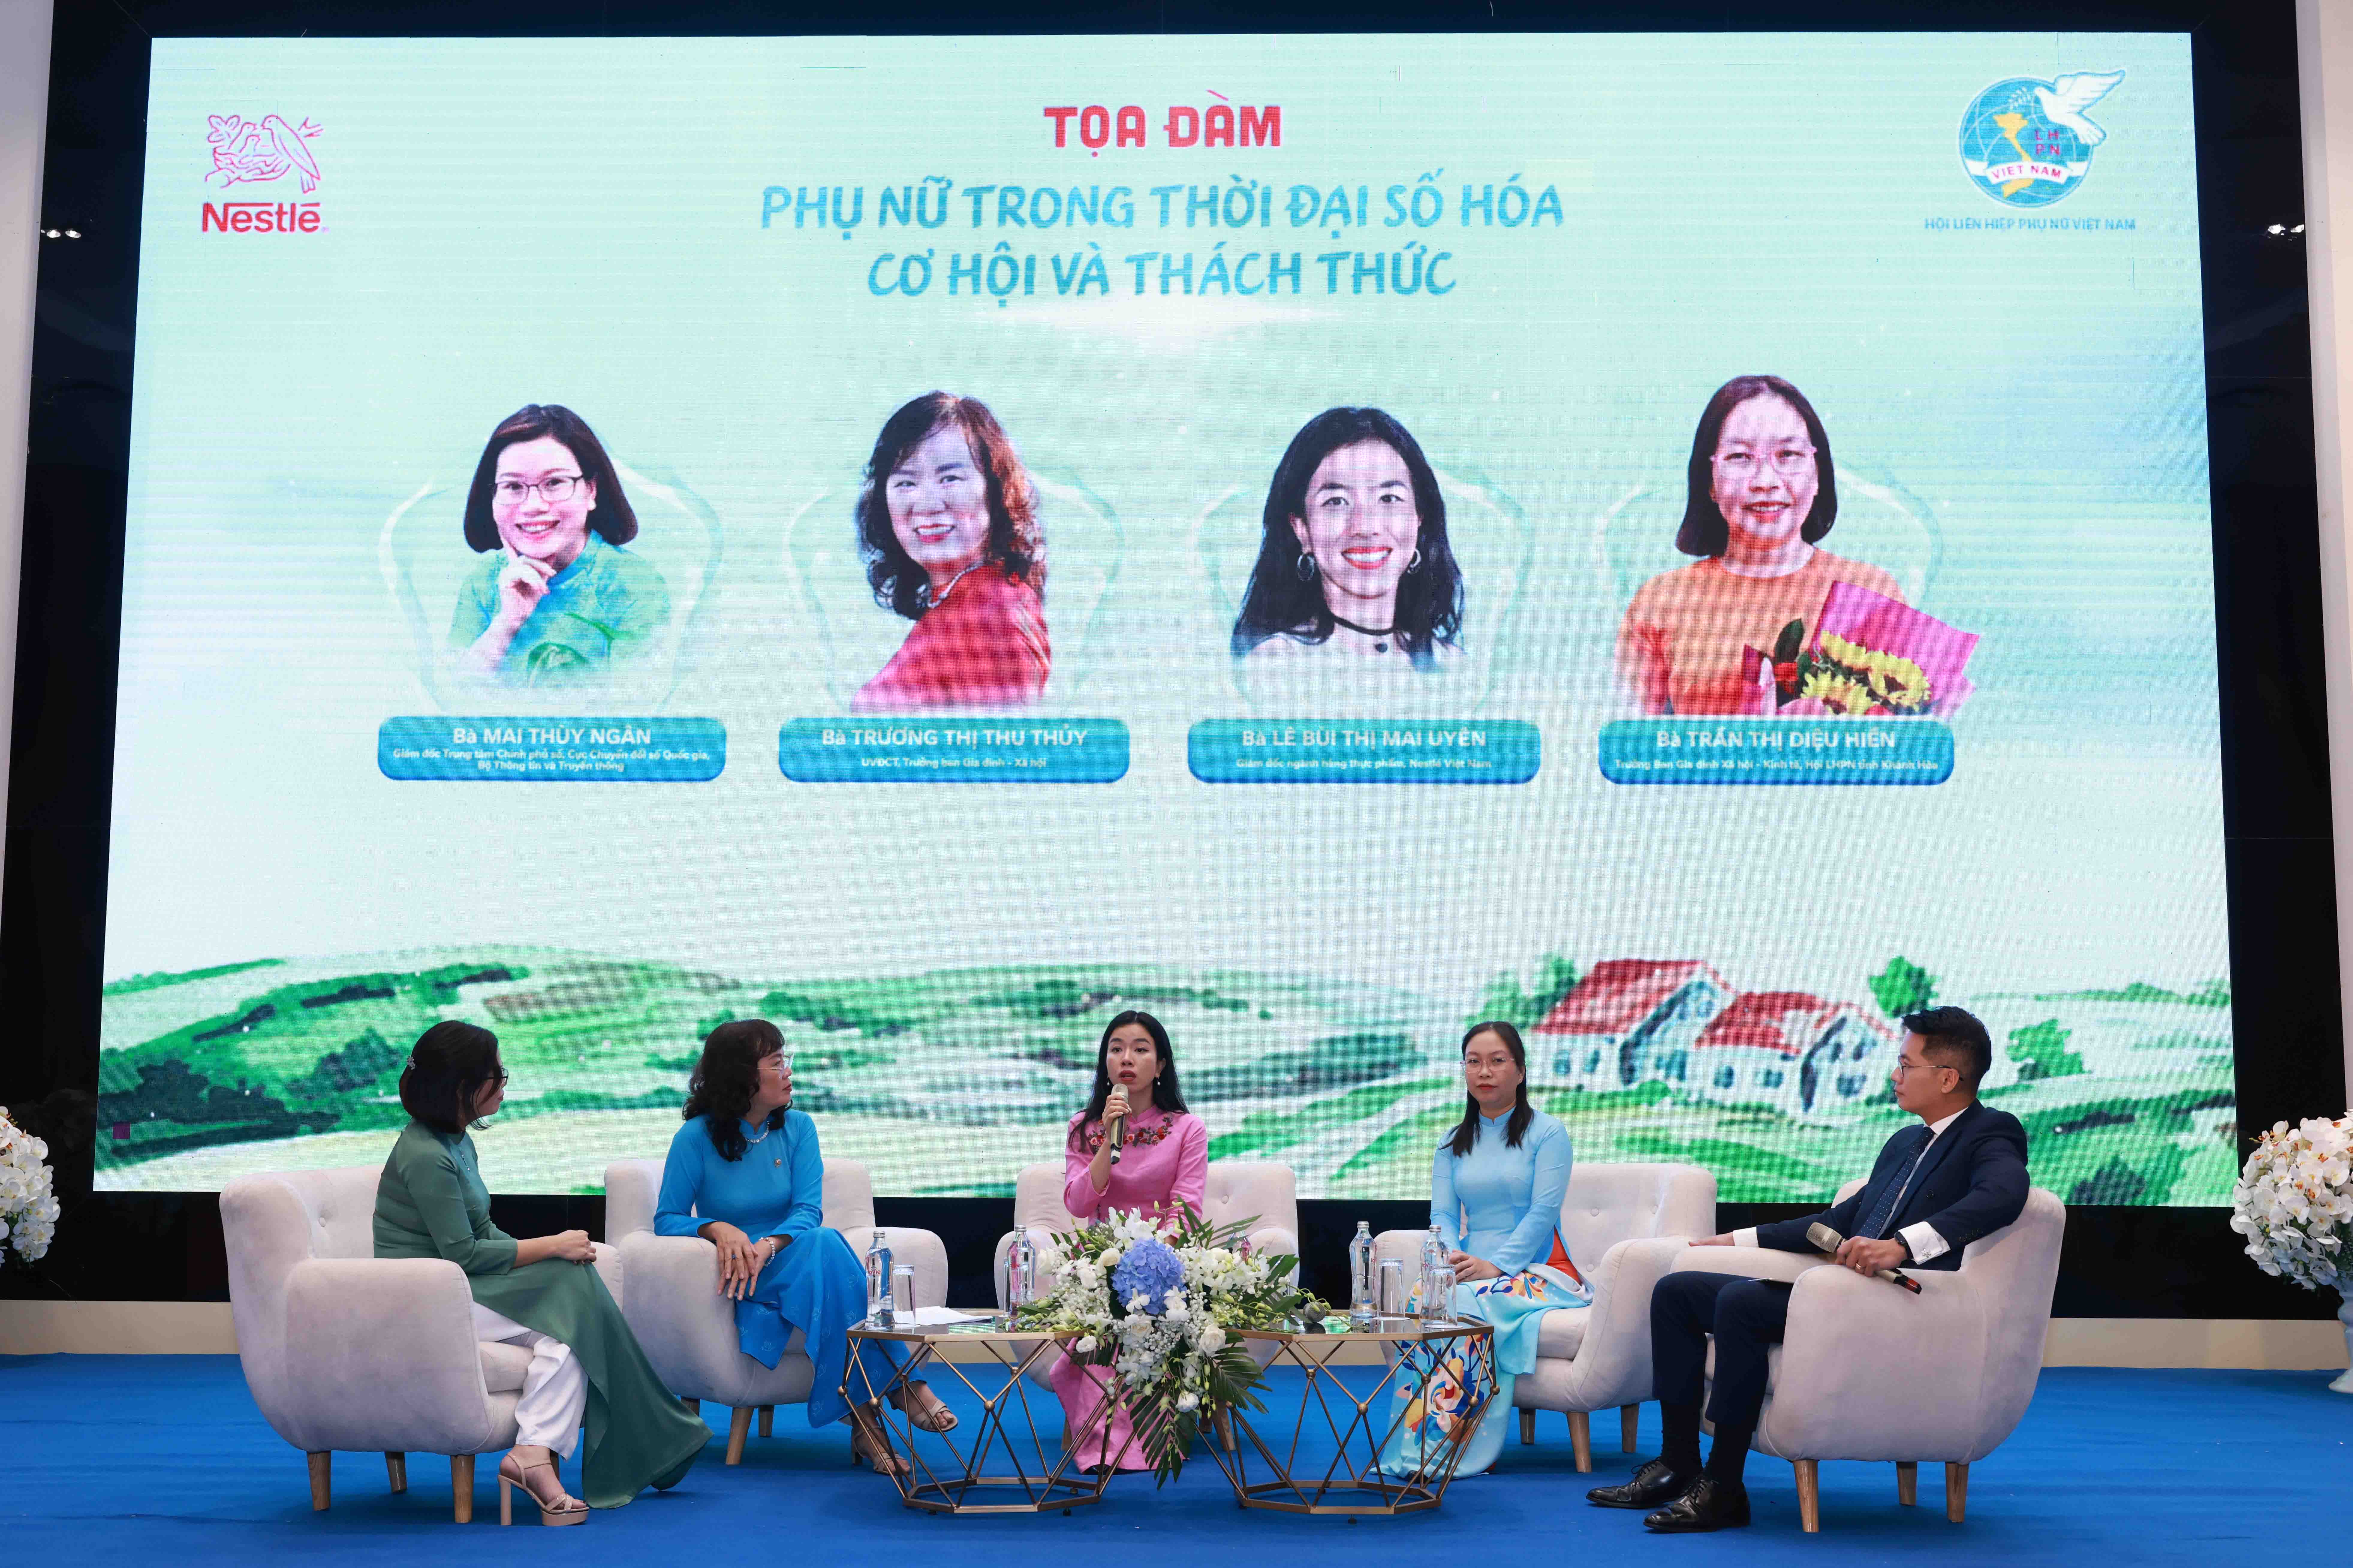 Cần biết - Nestlé Việt Nam chung tay xây dựng hình ảnh người phụ nữ Việt Nam thời đại mới (Hình 2).